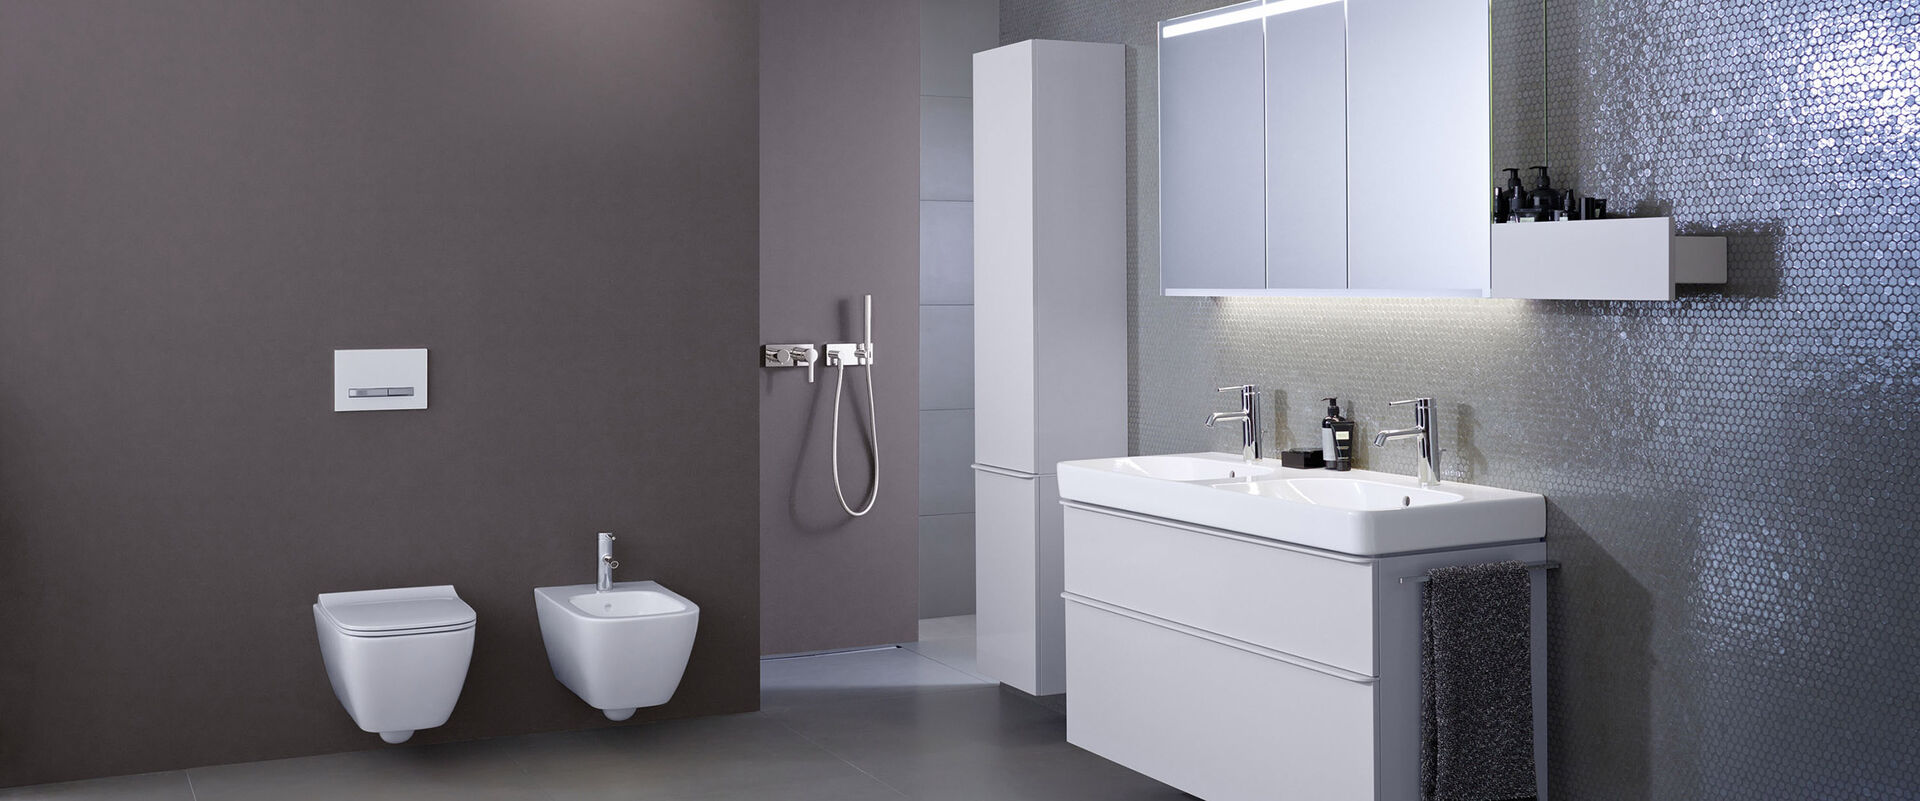 Mit Geberit Smyle lassen sich komplette Badezimmer ausstatten - moderne Badmöbel und Keramiken überzeugen.